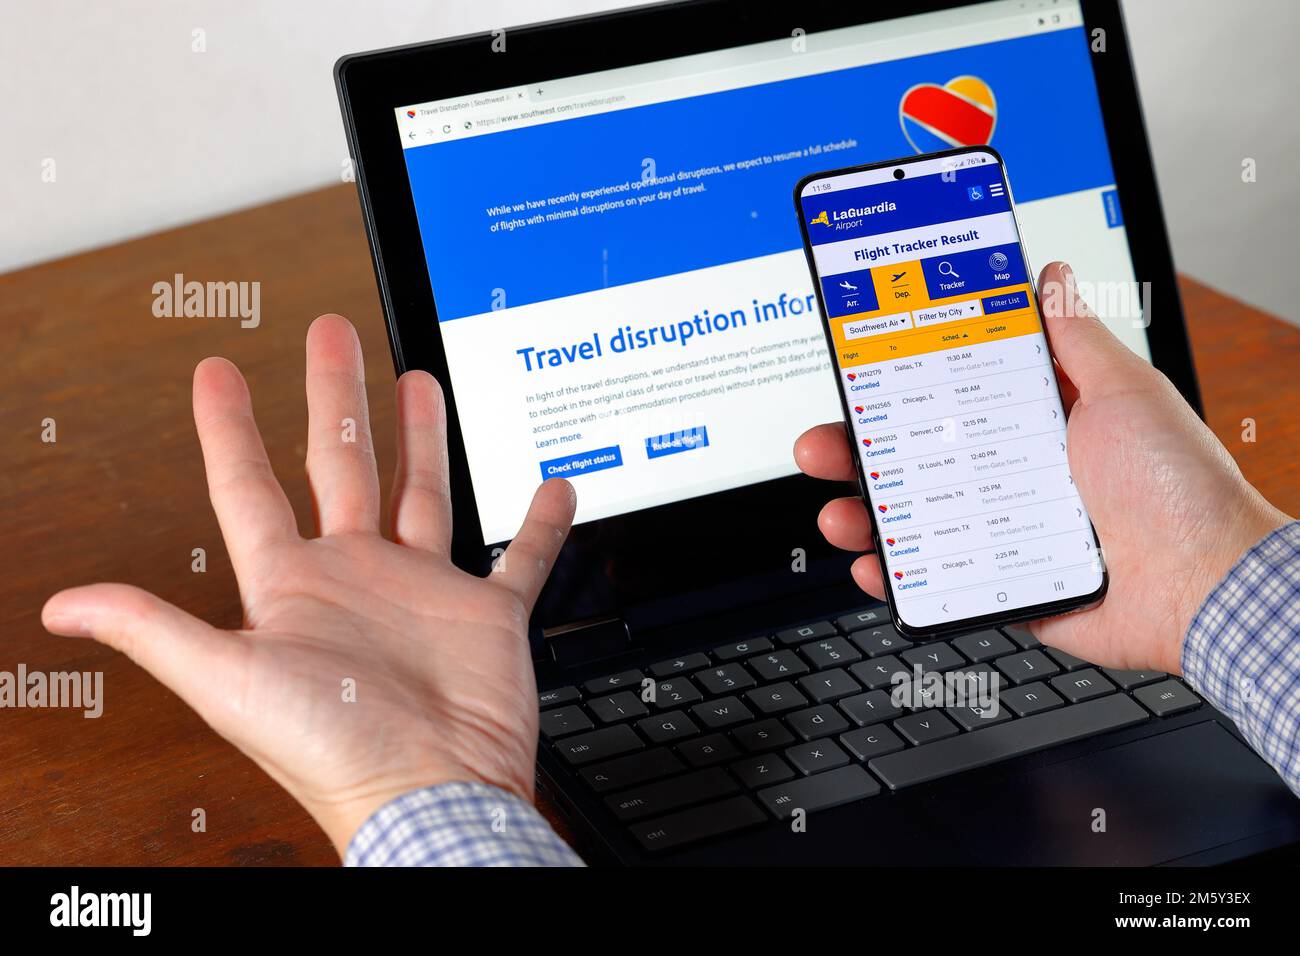 Le informazioni sulle cancellazioni dei voli e sulle interruzioni del viaggio di Southwest Airlines vengono visualizzate sullo smartphone e sullo schermo del computer con le mani in alto. Foto Stock